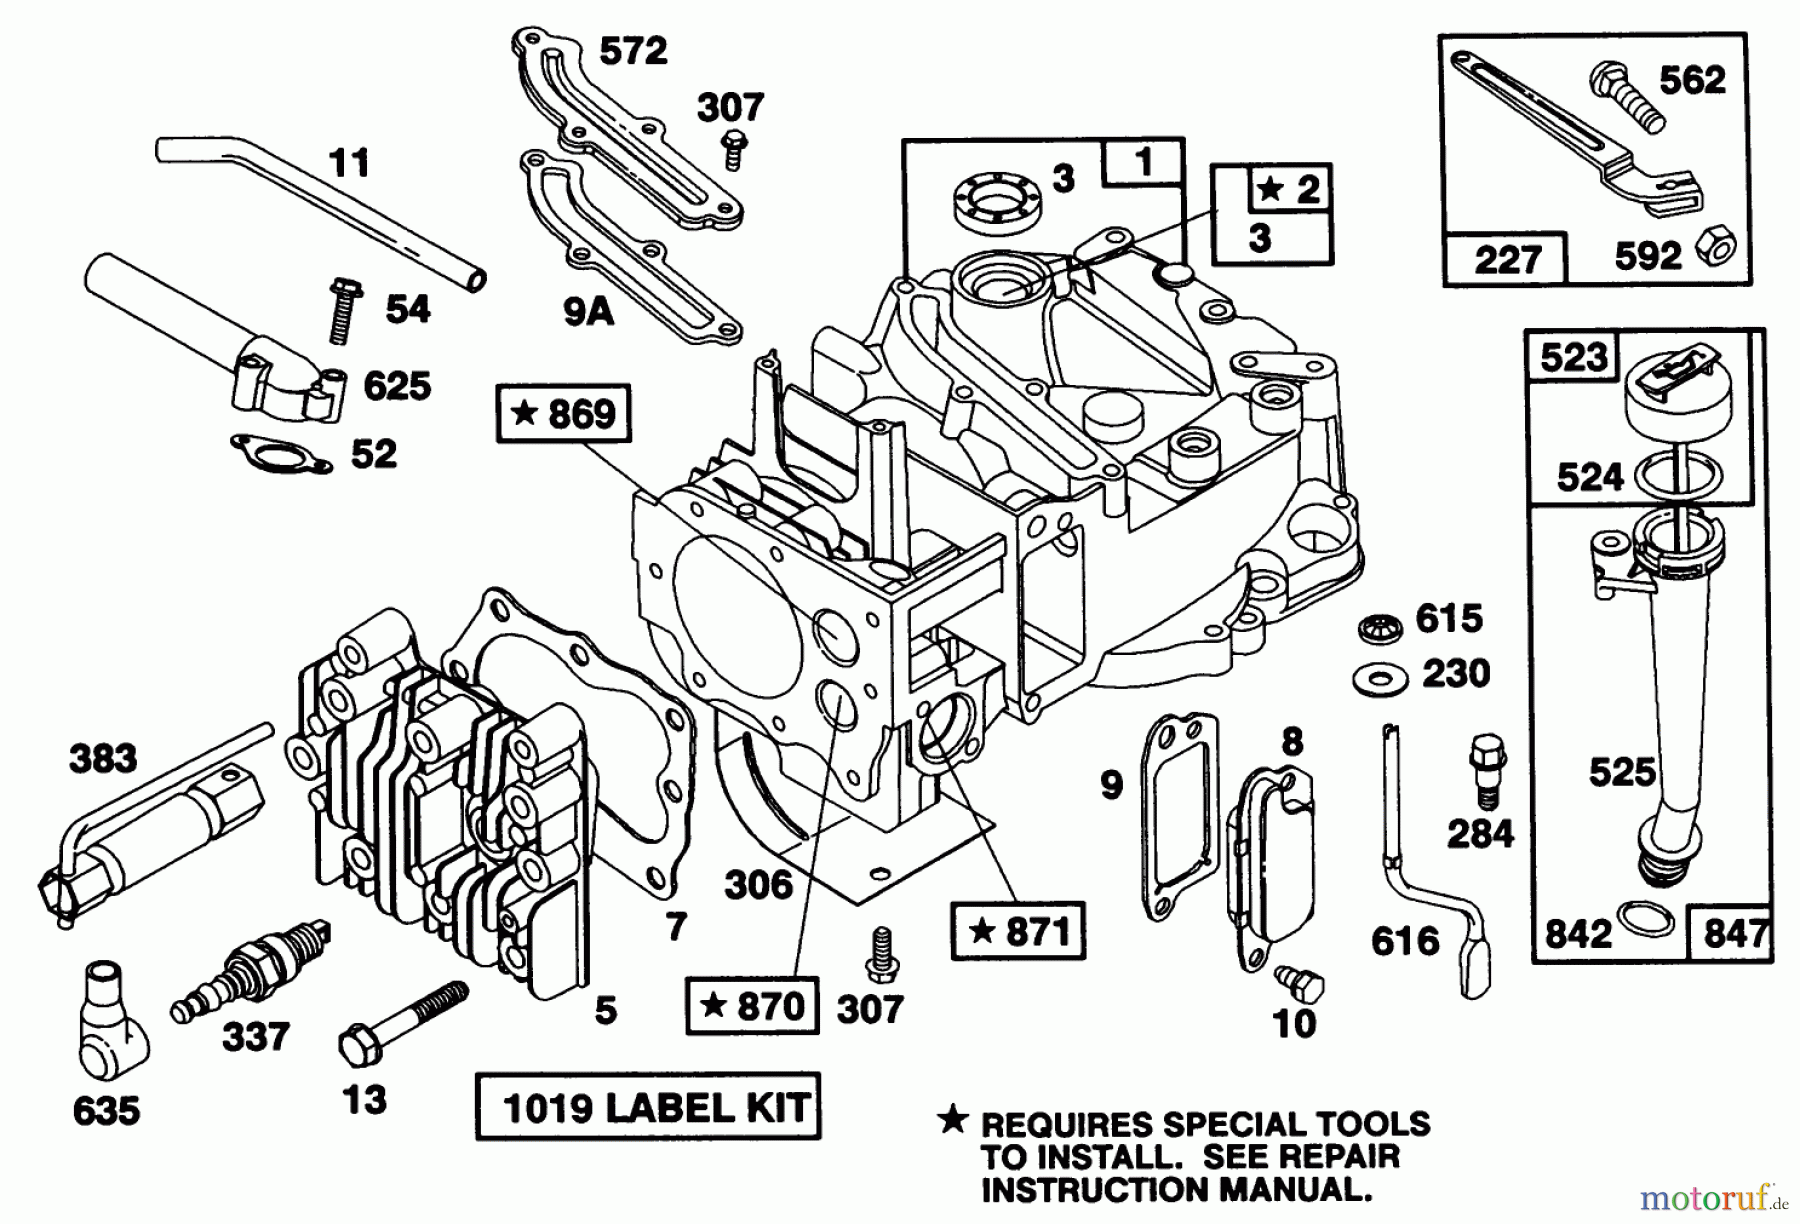  Toro Neu Mowers, Walk-Behind Seite 1 20213 - Toro Lawnmower, 1991 (1000001-1999999) ENGINE BRIGGS & STRATTON MODEL 124702-3115-01 #1